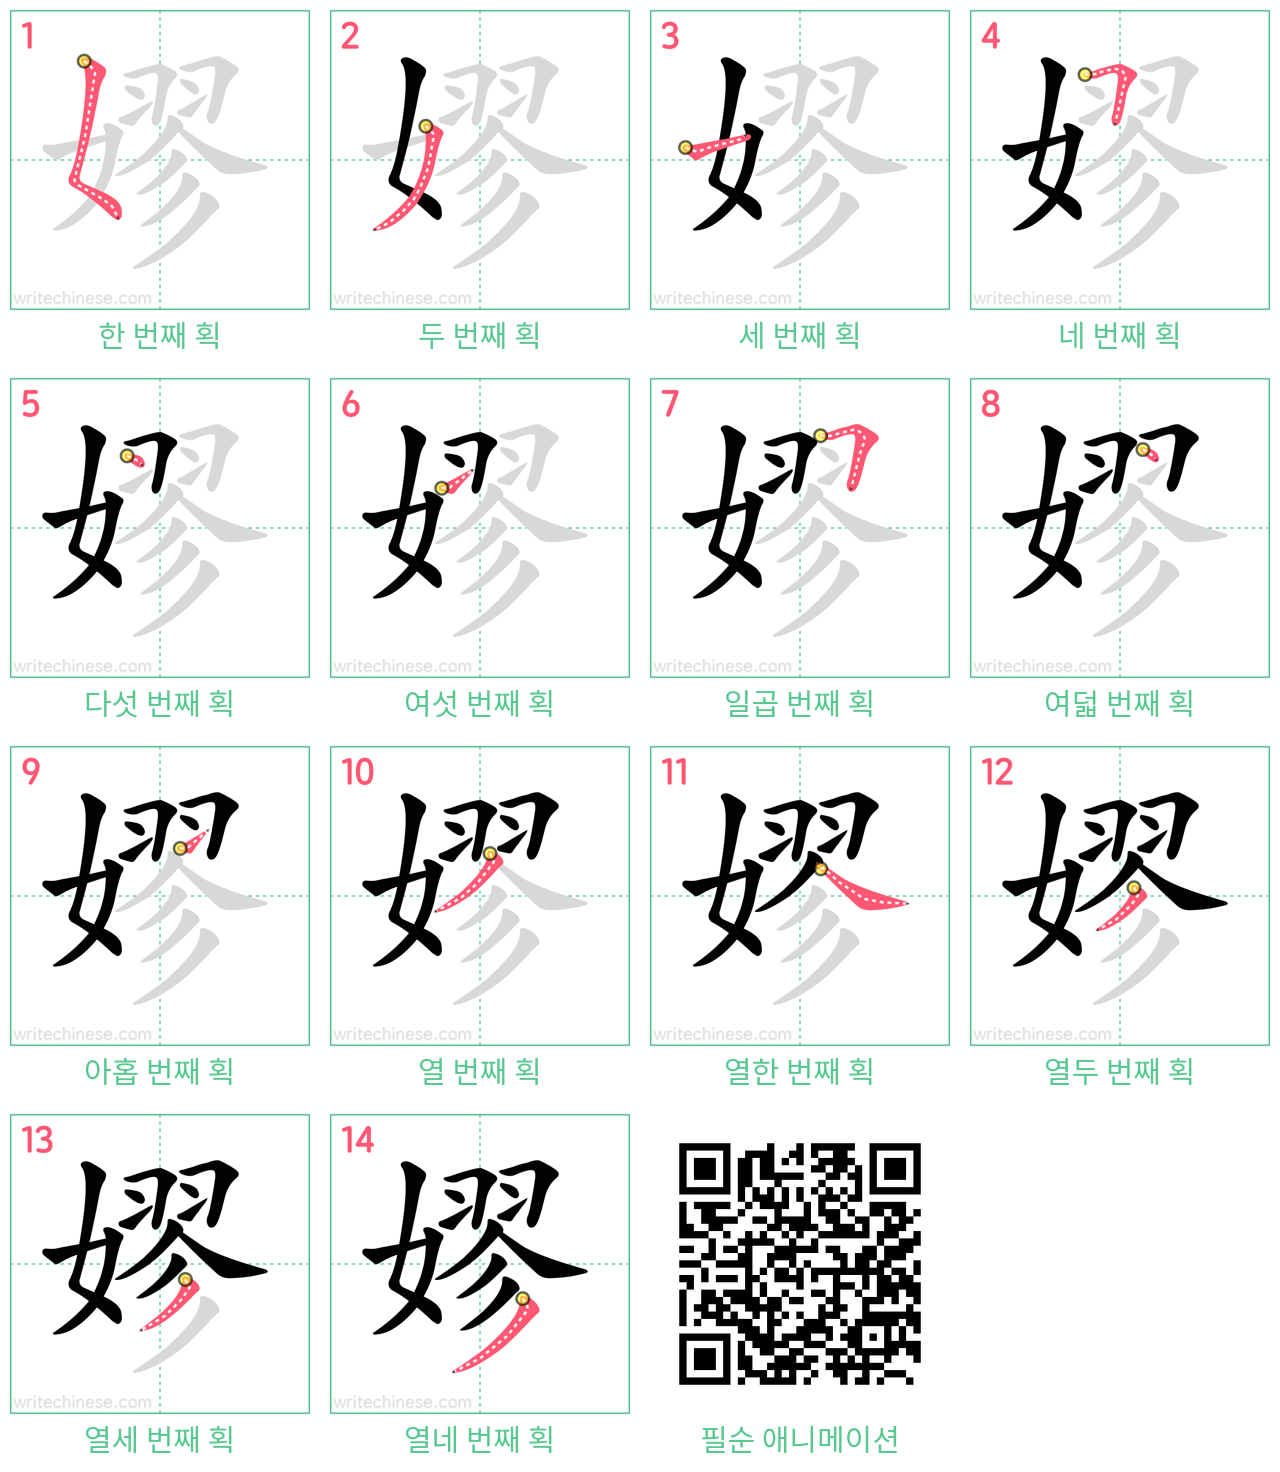 嫪 step-by-step stroke order diagrams